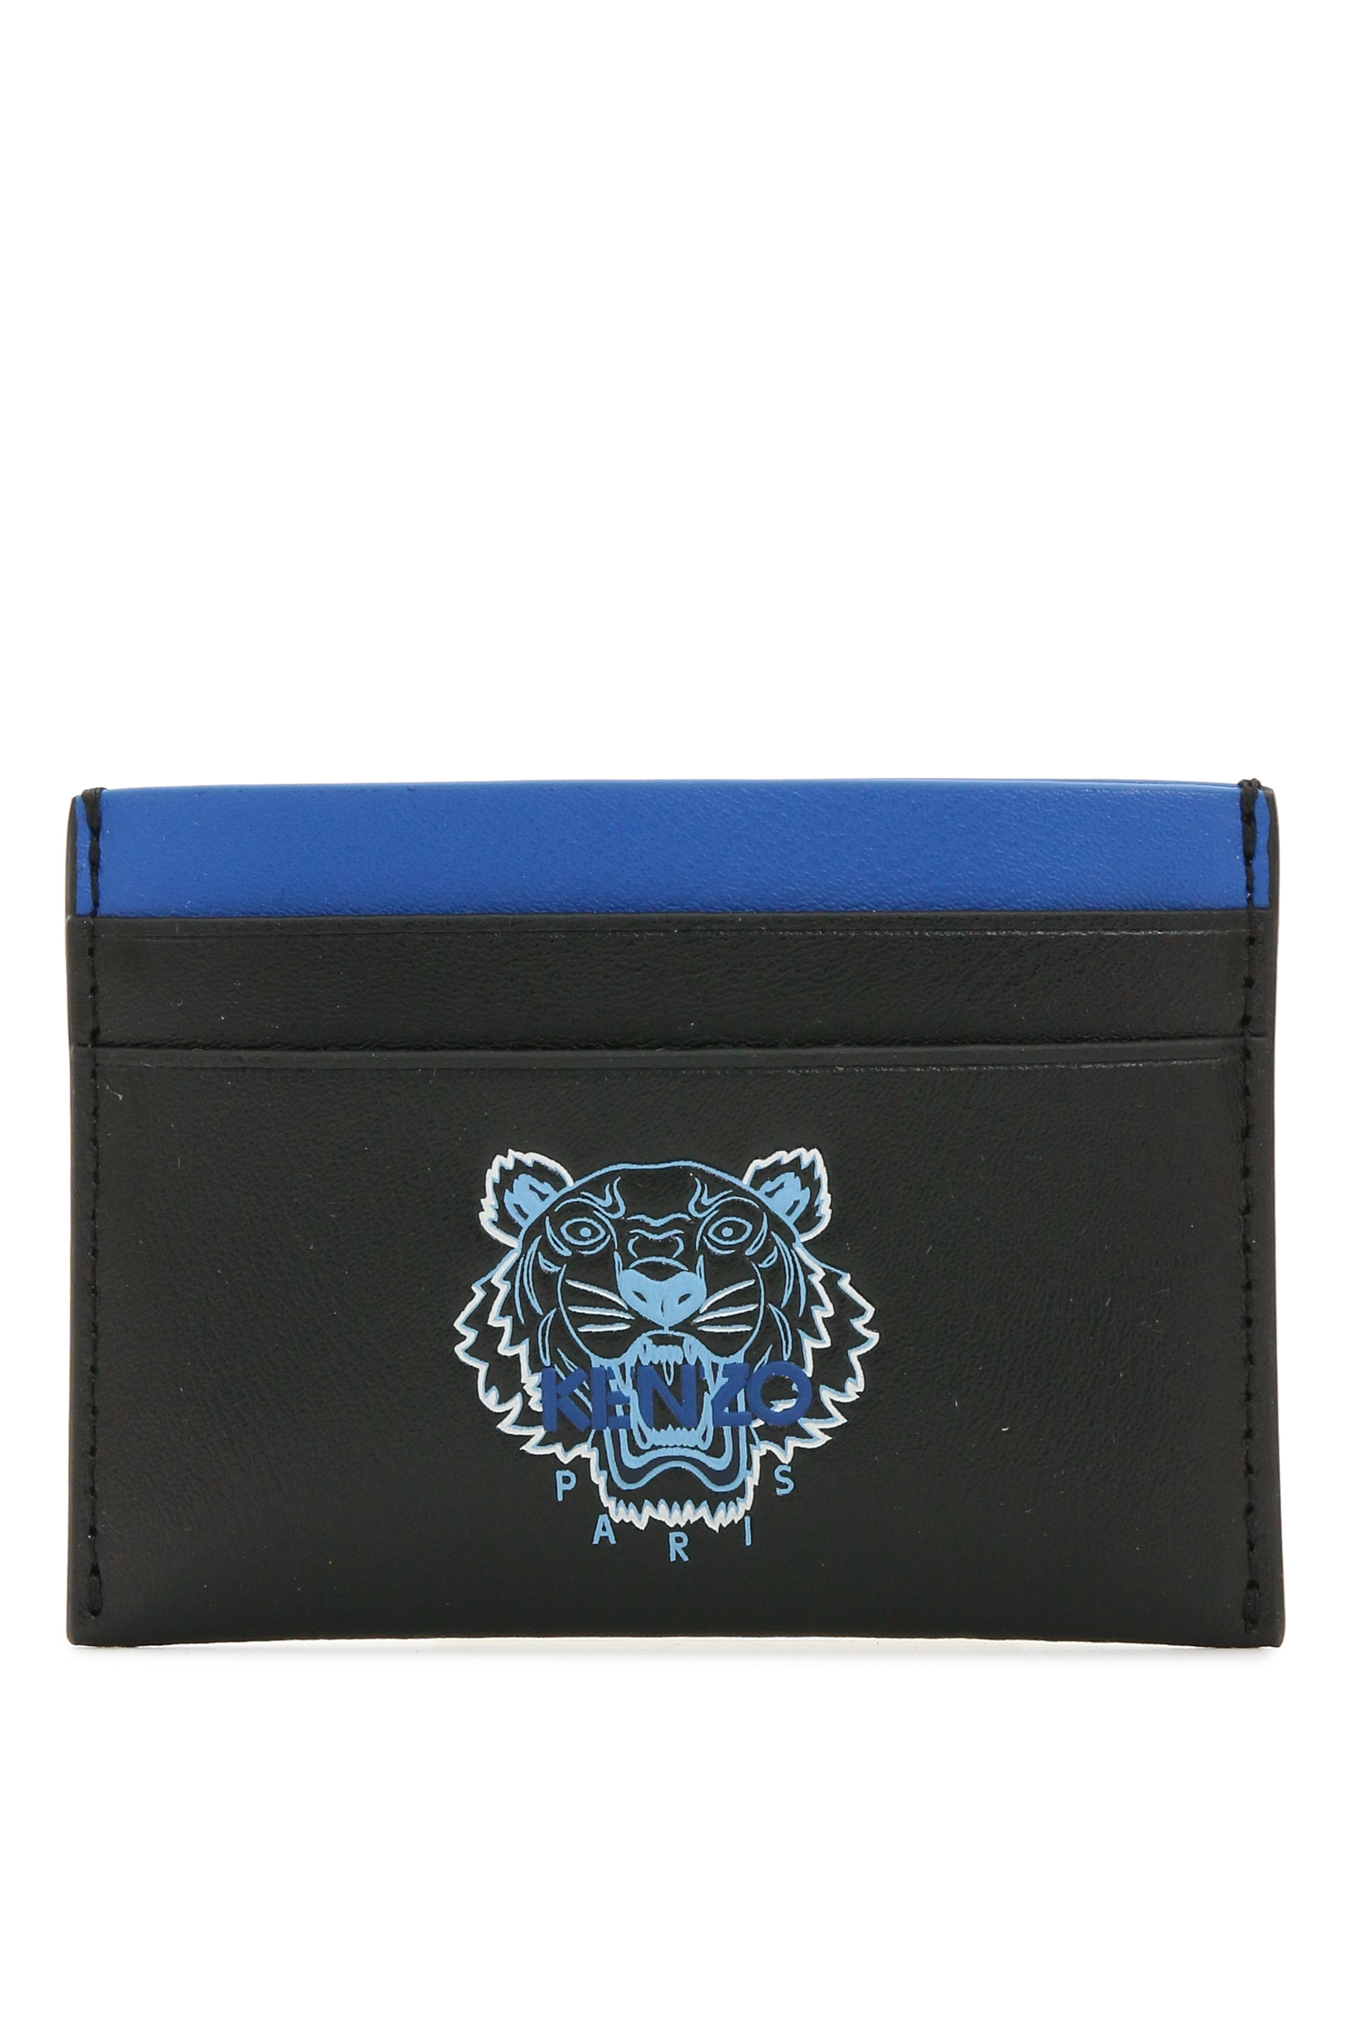 kenzo card wallet